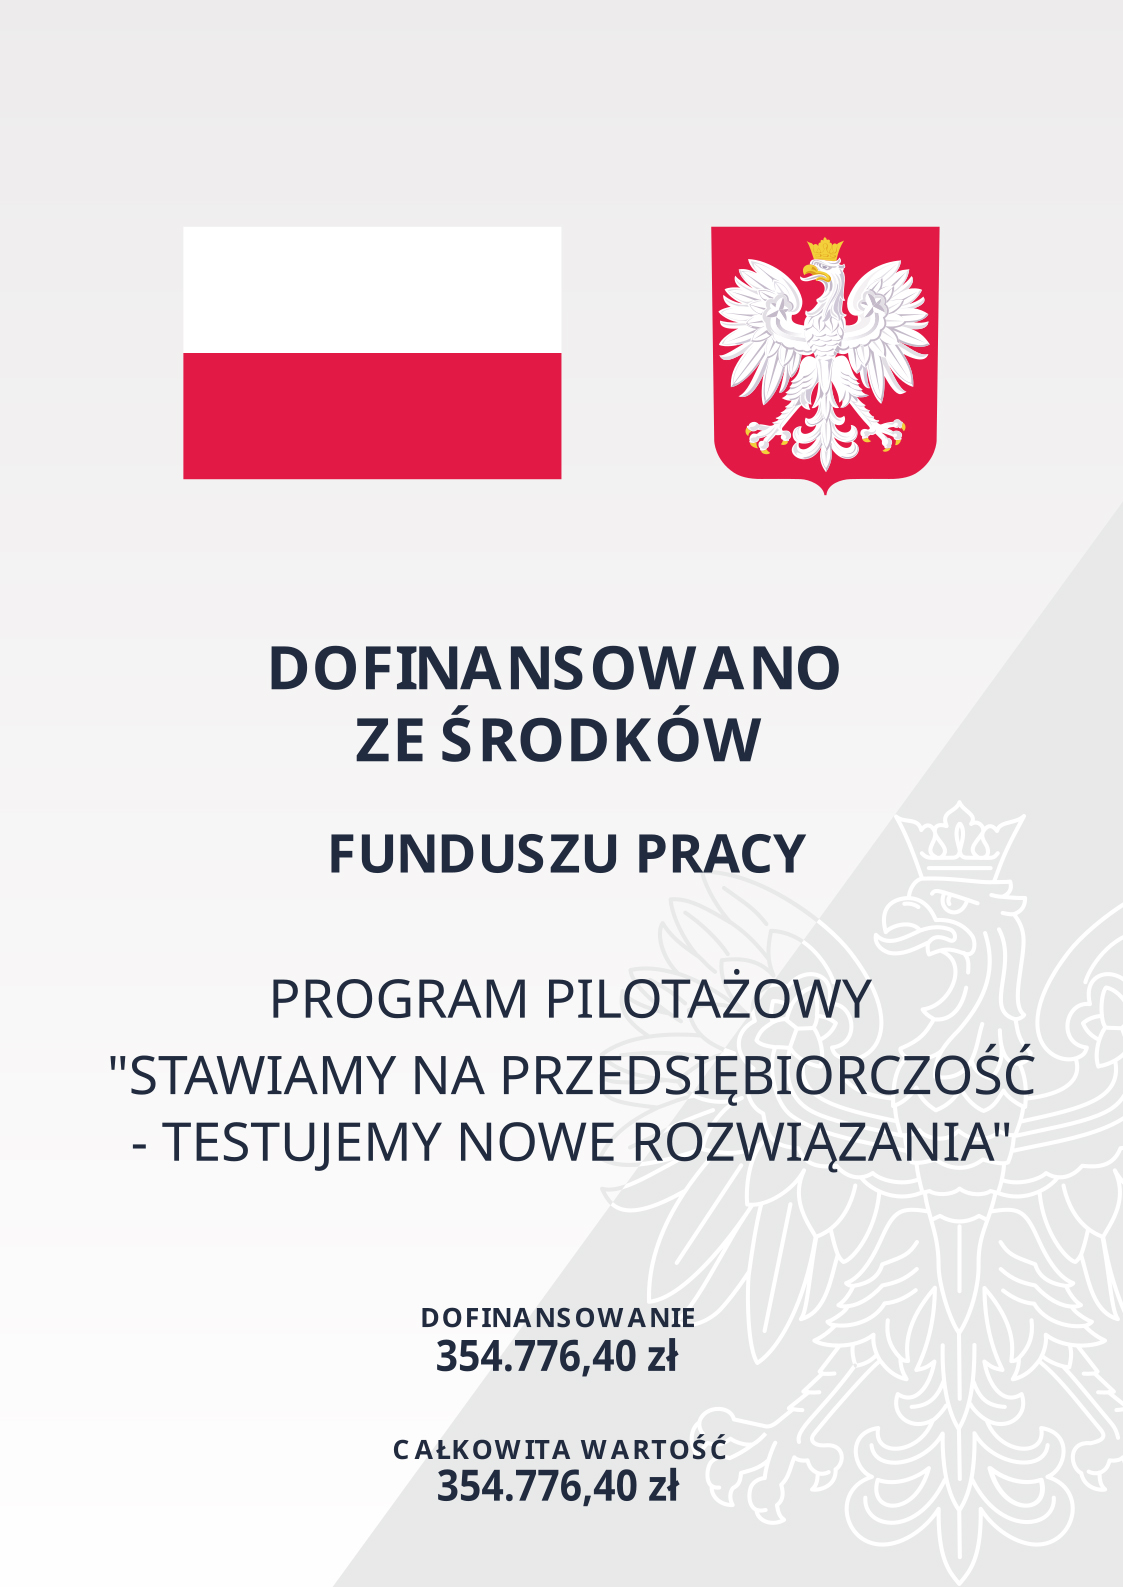 Plakat zawiera Flagę Polski, Godło oraz tekst Dofinansowano ze środków Funduszu Pracy
Program pilotażowy "Stawiamy na przedsiębiorczość-testujemy nowe rozwiązania"
Dofinansowanie: 354.776,40
Całkowita wartość: 354.776,40